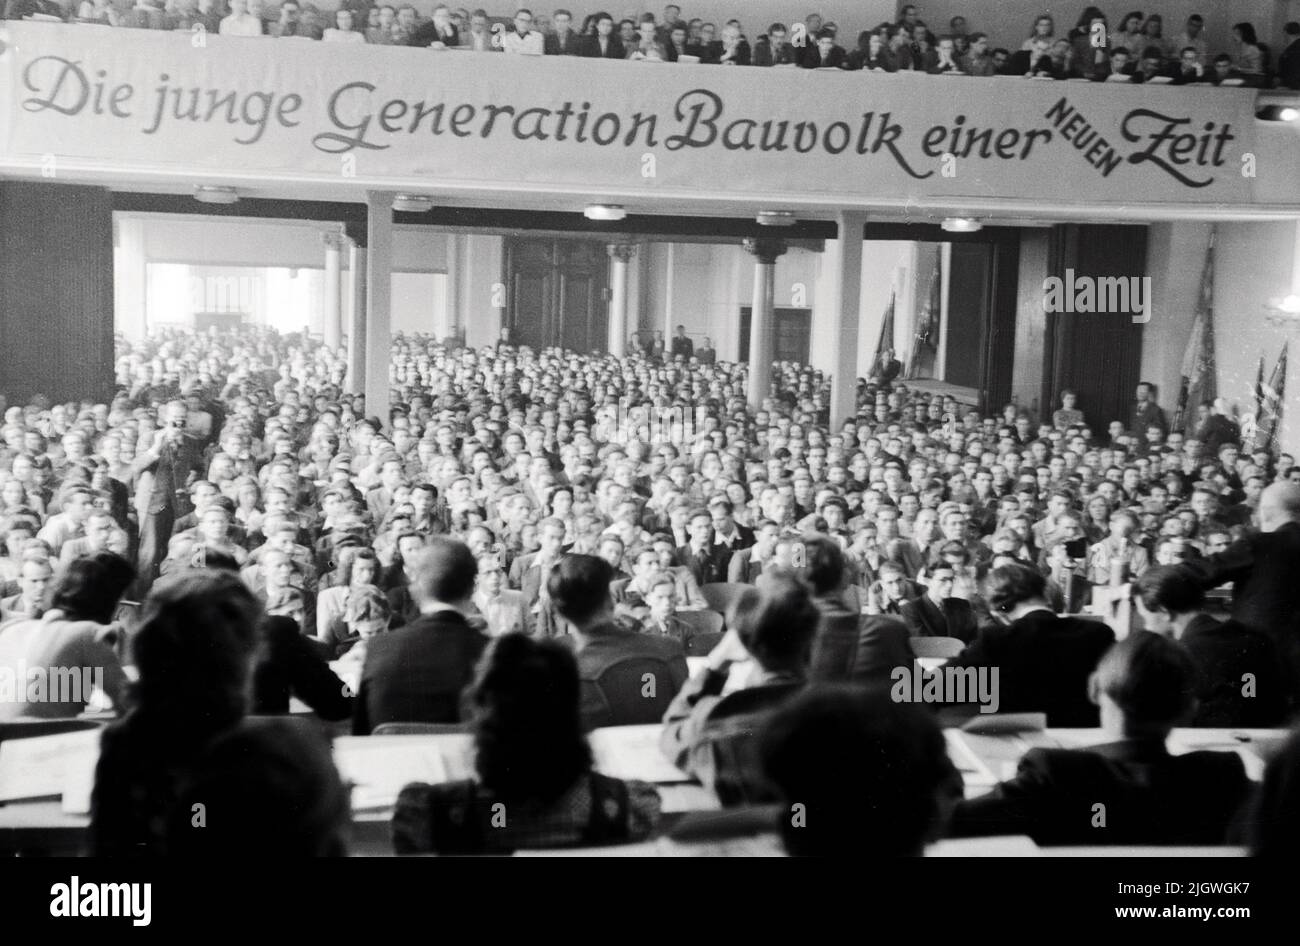 Blick ins Publikum und auf das Banner 'Die junge Generation Bauvolk einer neuen Zeit' beim Pfingsttreffen und 2. Parlament der FDJ a Meissen, Deutschland 1947. Foto Stock